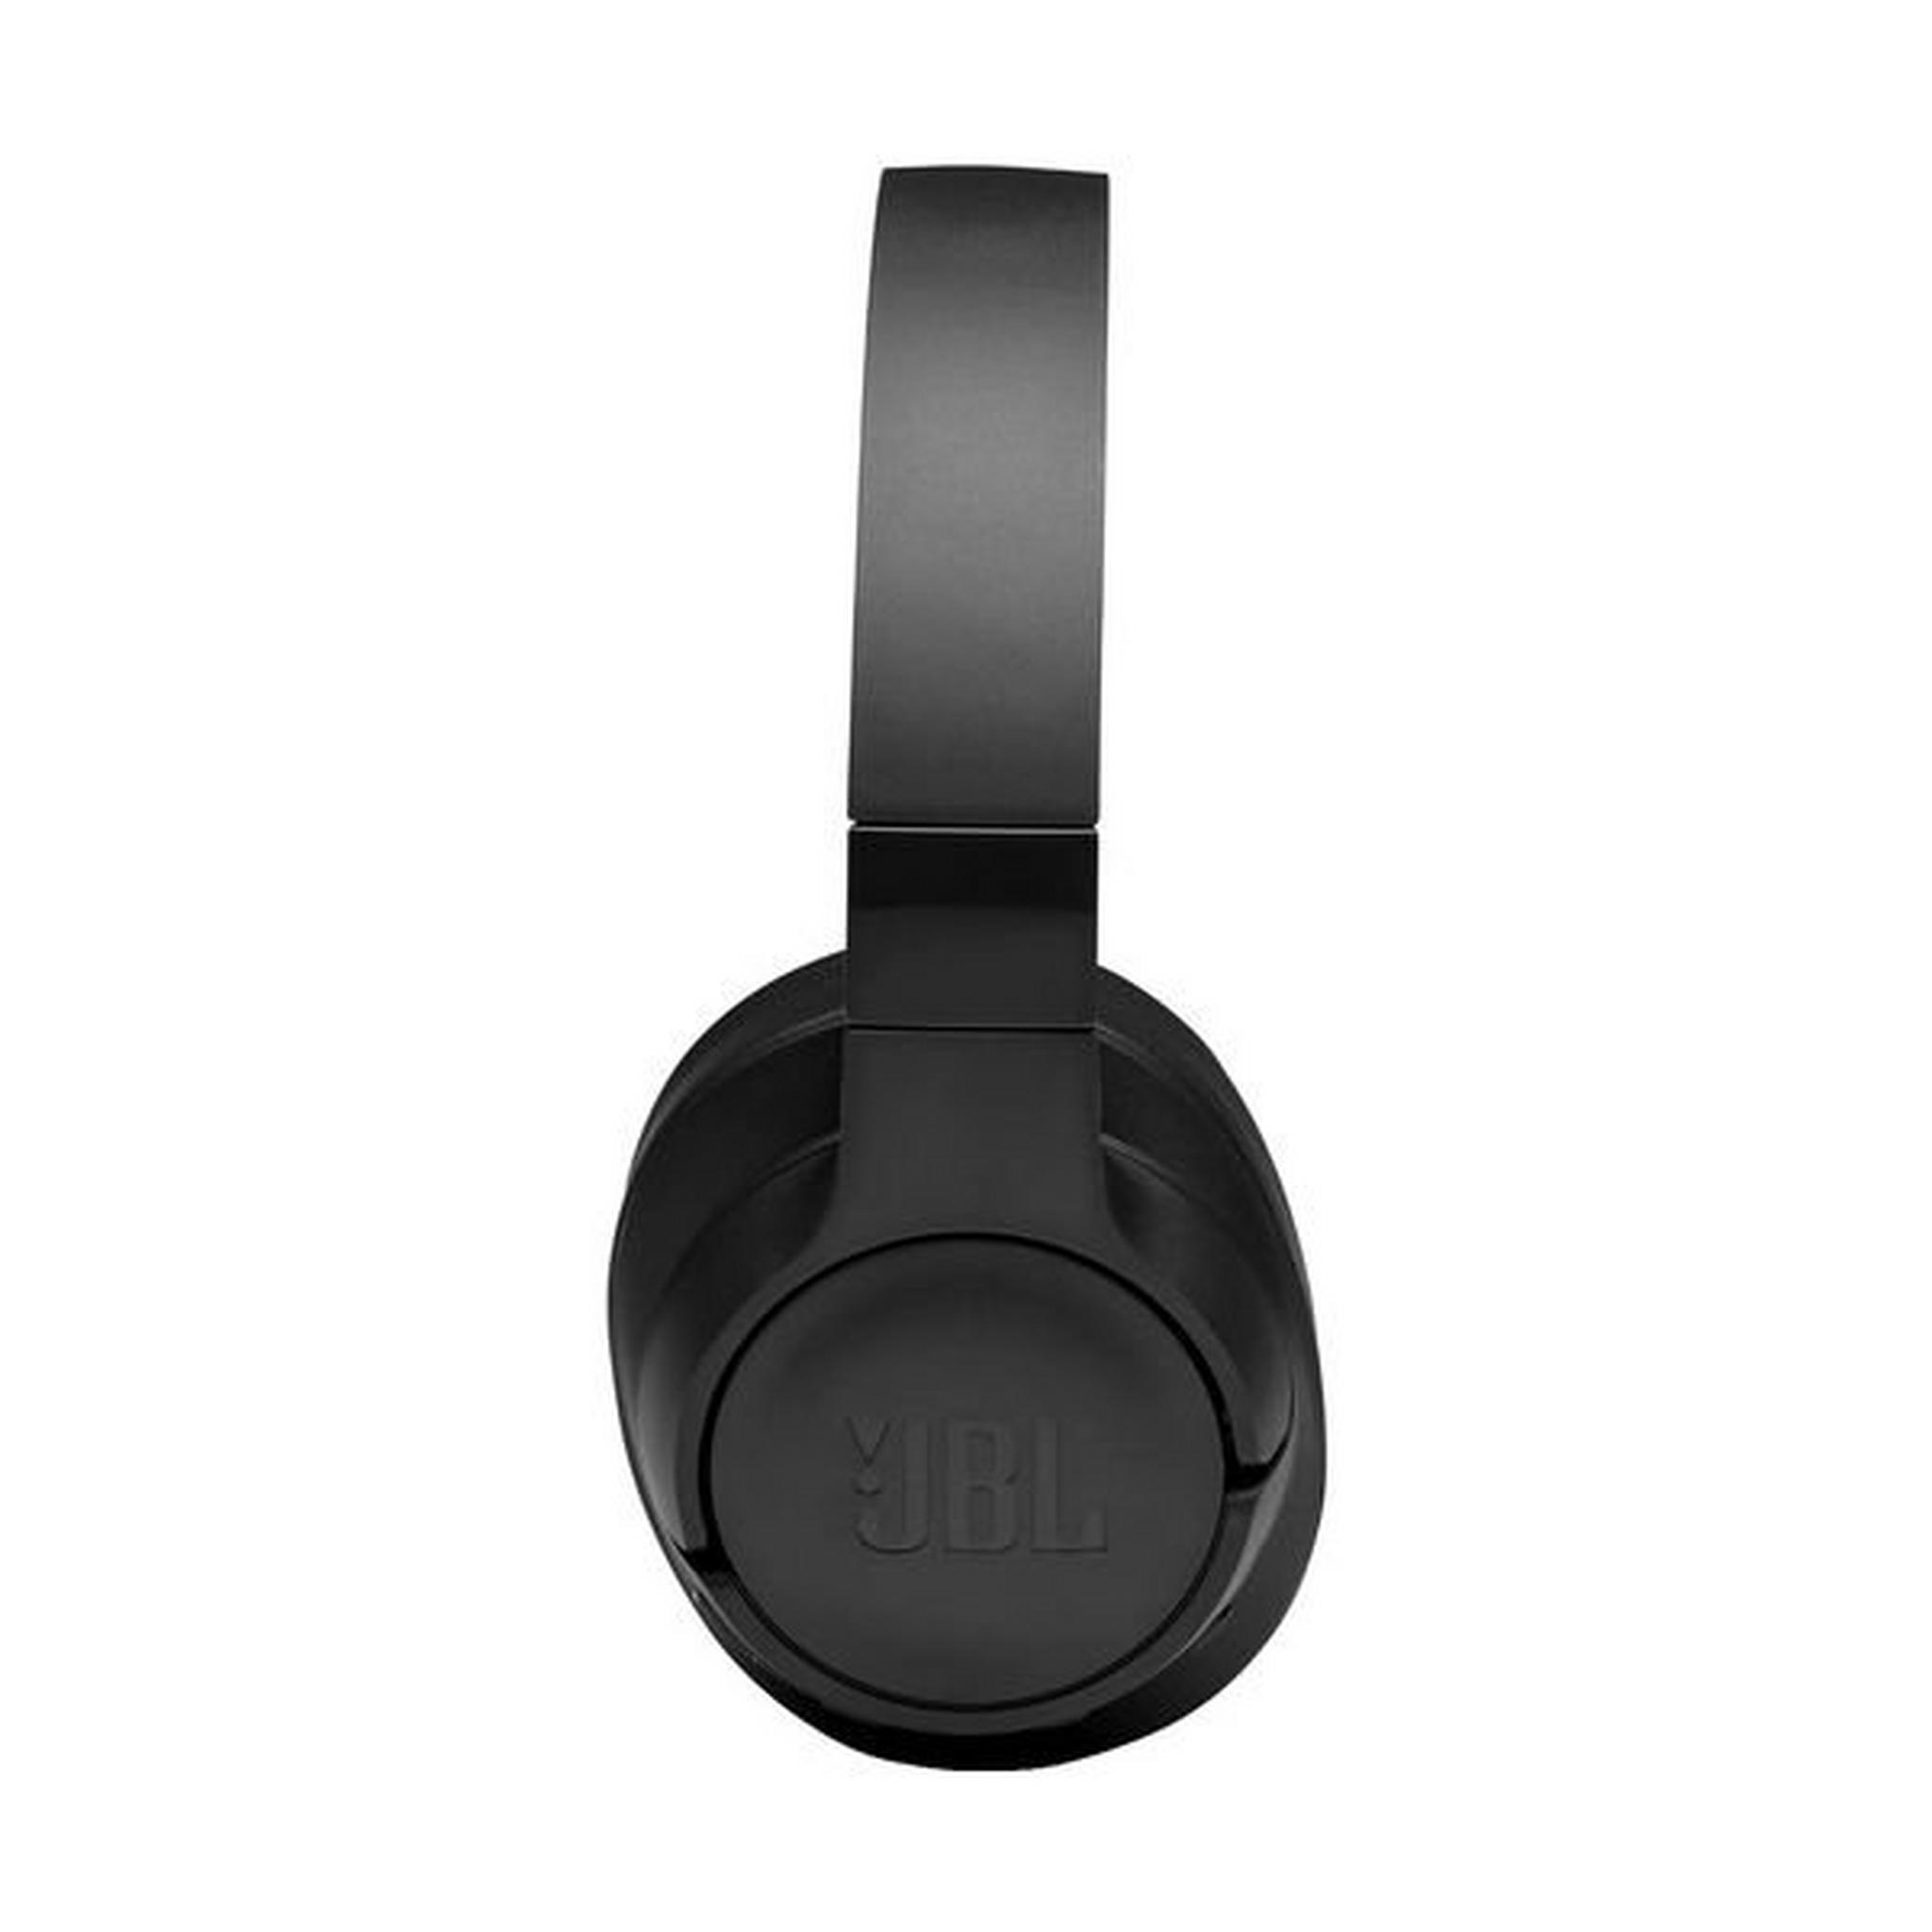 سماعة الرأس جاي بي إل تون فوق الأذن اللاسلكية مع خاصية إلغاء الضوضاء (750BTNC) - أسود